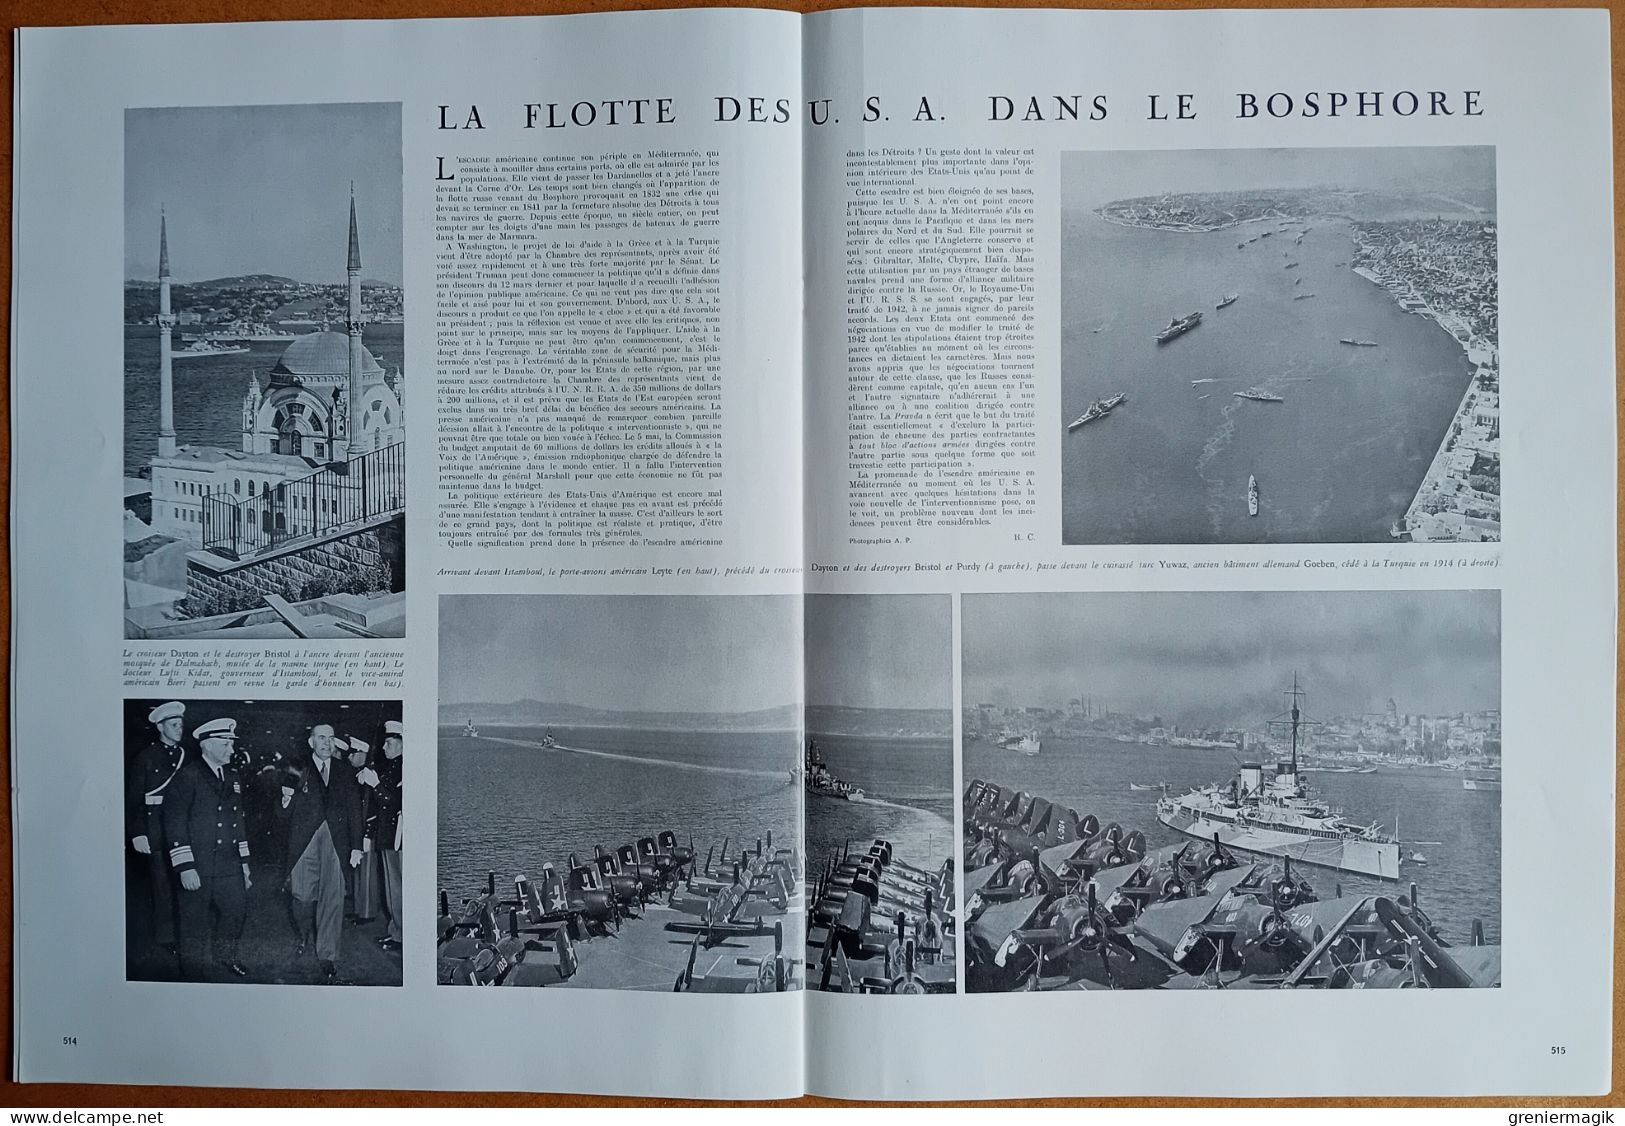 France Illustration N°86 24/05/1947 Félix Eboué/Indochine échec du viet-minh/Les passages parisiens/Foire de Paris